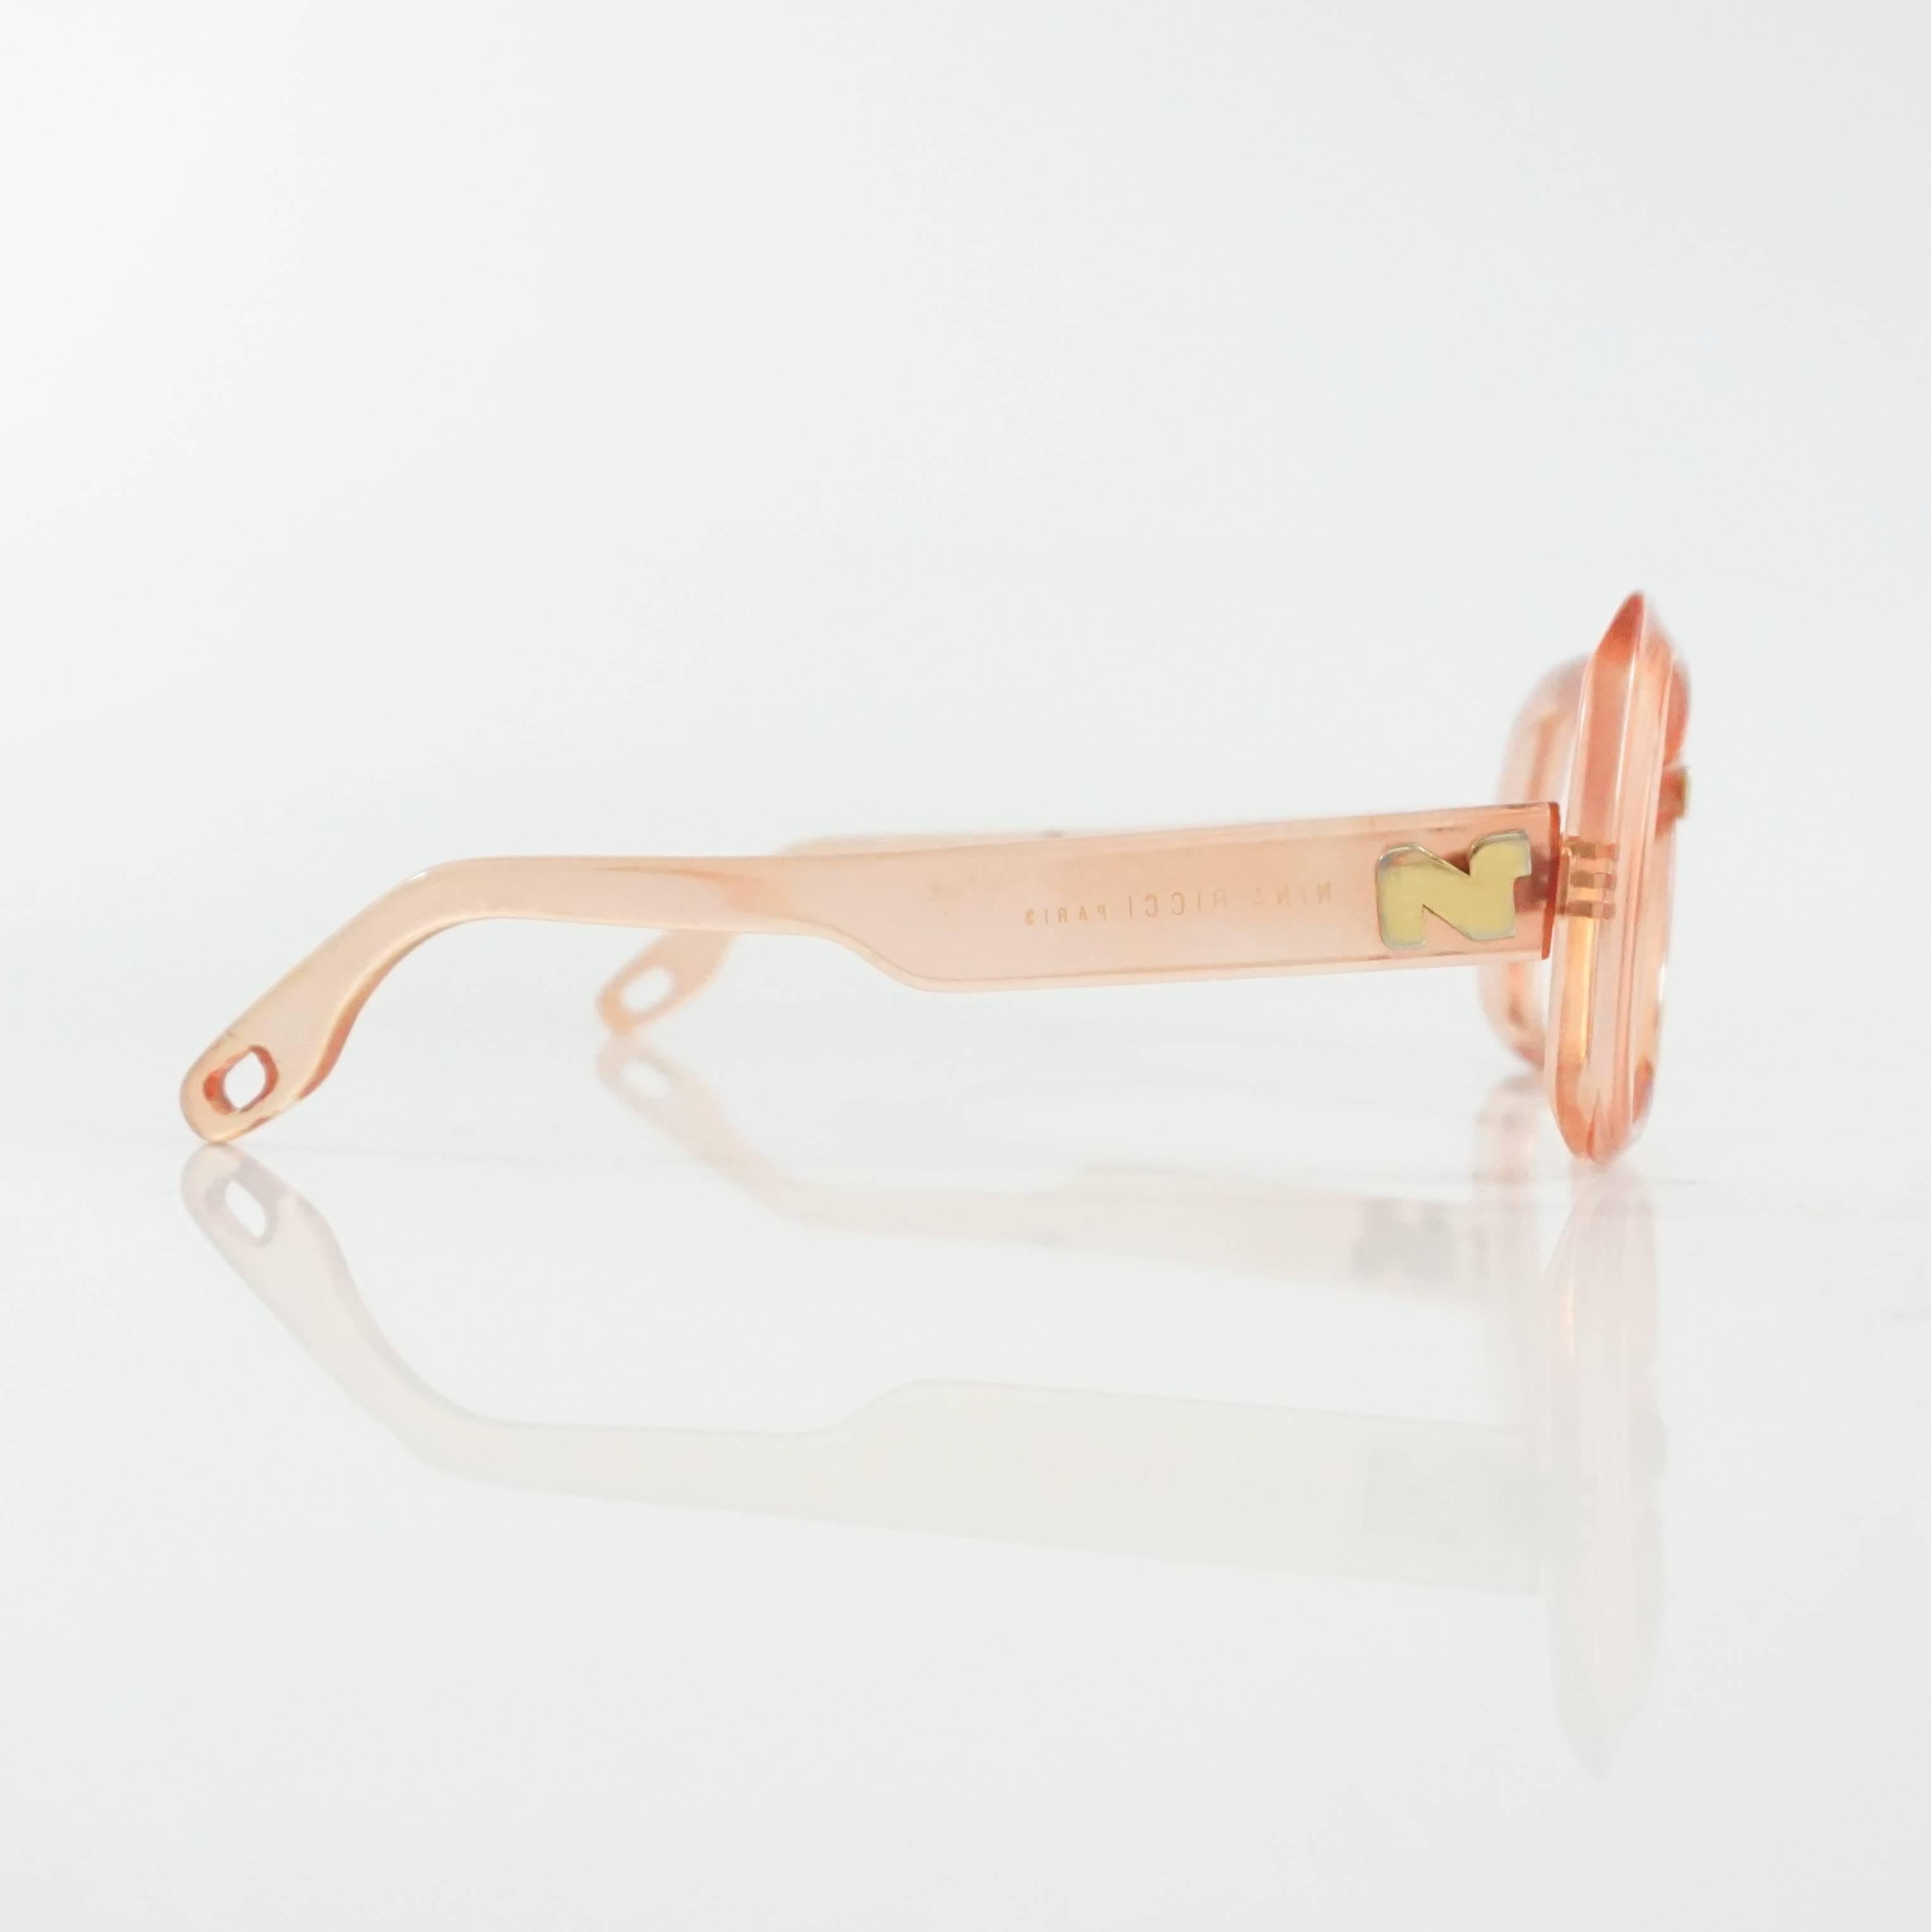 Diese Vintage-Sonnenbrille von Nina Ricci ist aus rosa Lucite gefertigt. Sie haben einen quadratischen Rahmen ohne Gläser und Löcher am Ende der Beine, die mit einem Riemen verbunden werden können. Sie sind in gutem Vintage-Zustand mit einigen